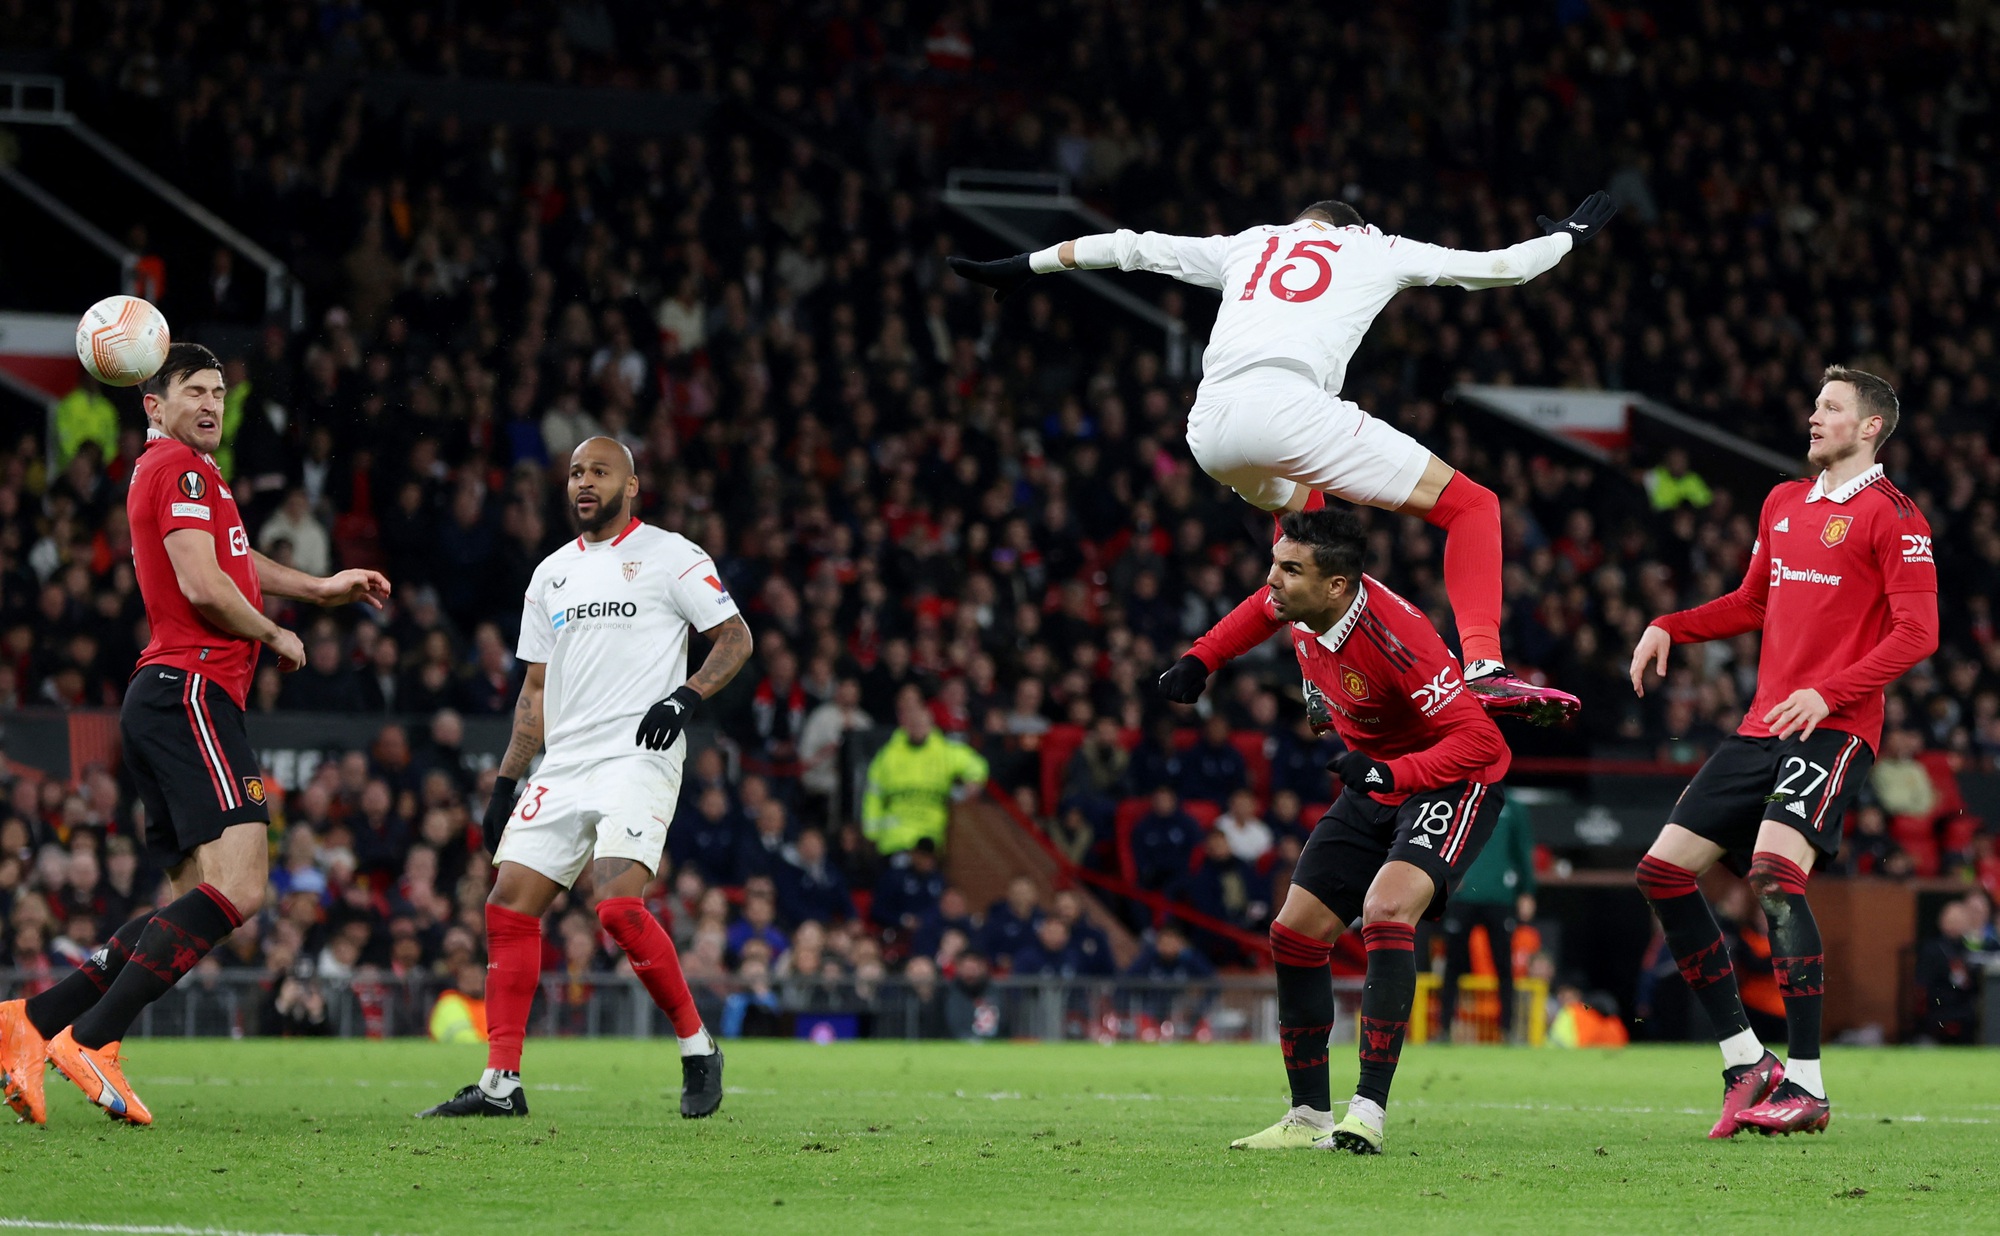 Ngỡ ngàng 2 bàn đá phản, Man United đánh rơi chiến thắng trước Sevilla - Ảnh 7.